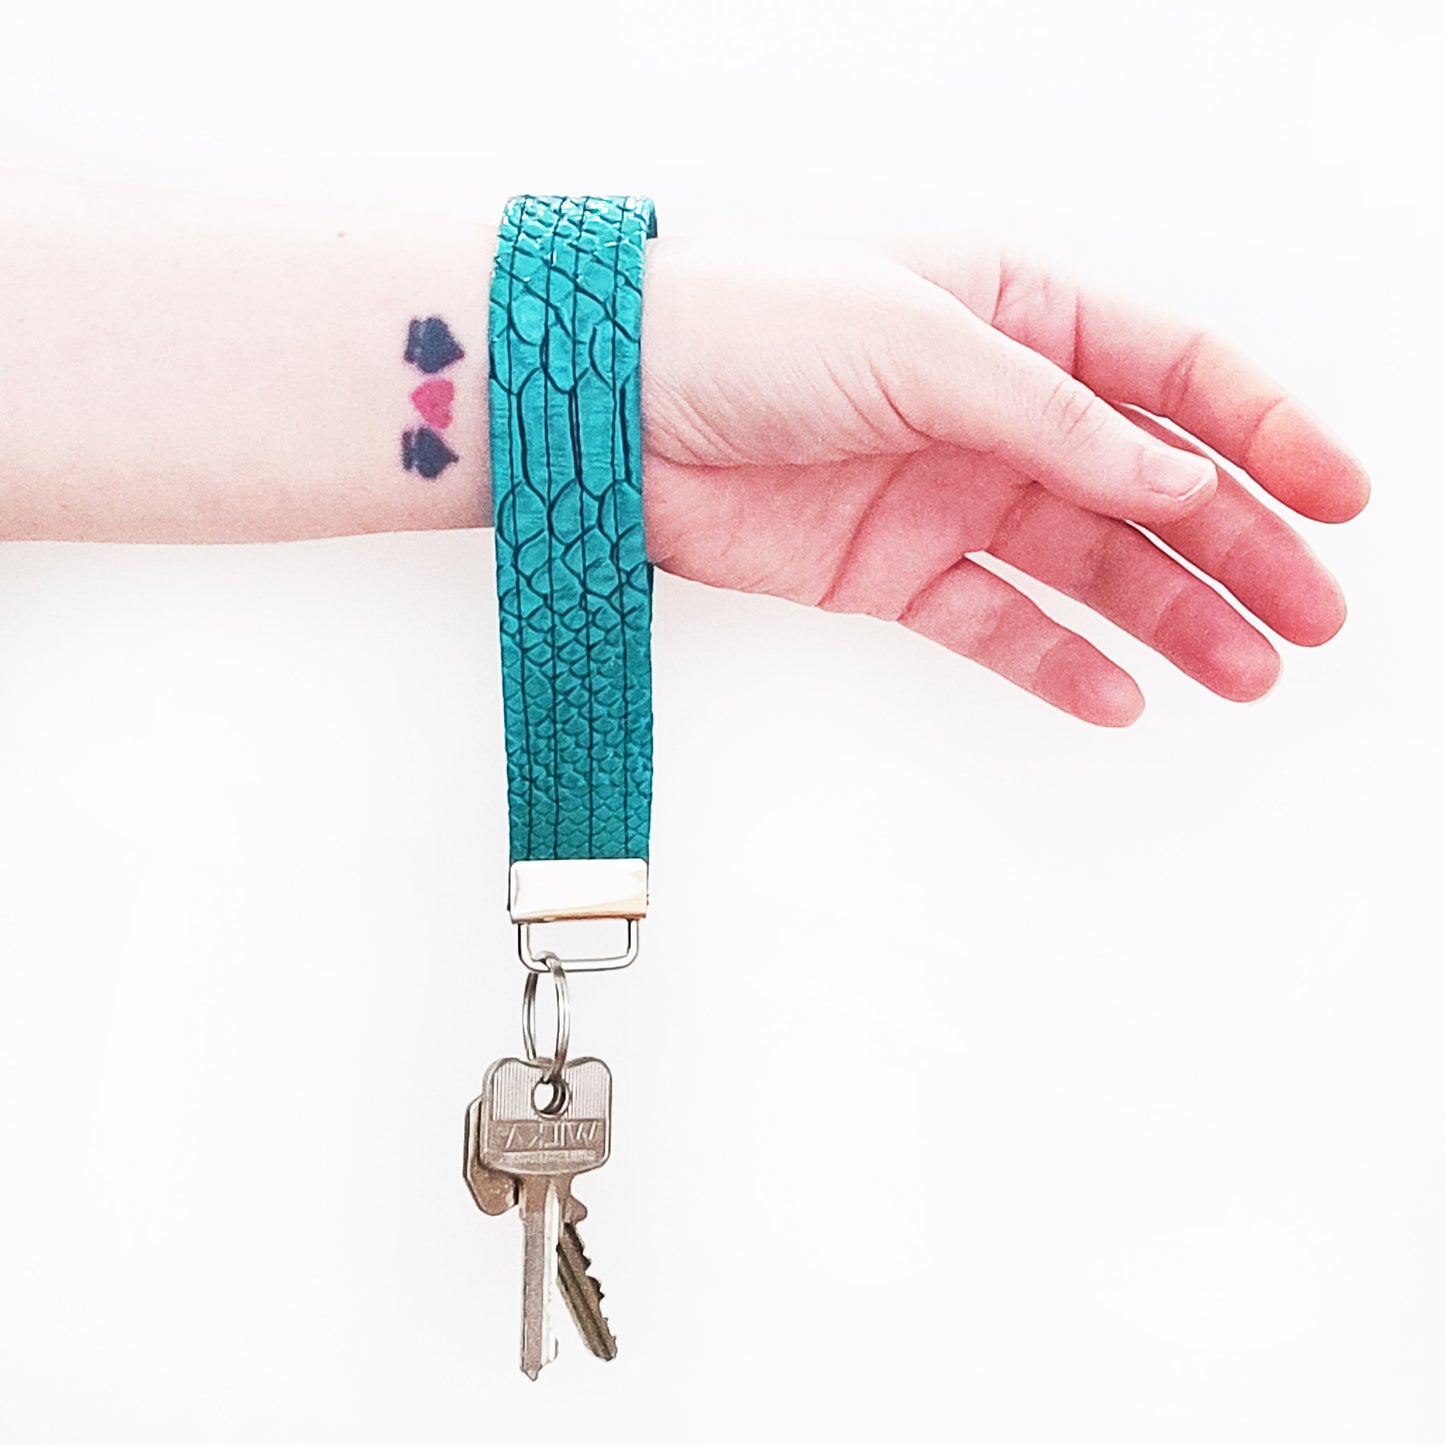 Handgemachter Schlüsselanhänger der aus türkisfarbenem Lederimitat mit Krokodil Optik gefertigt ist. Dieser praktische Anhänger kann bequem um das Handgelenk getragen werden, sodass er jederzeit griffbereit ist.